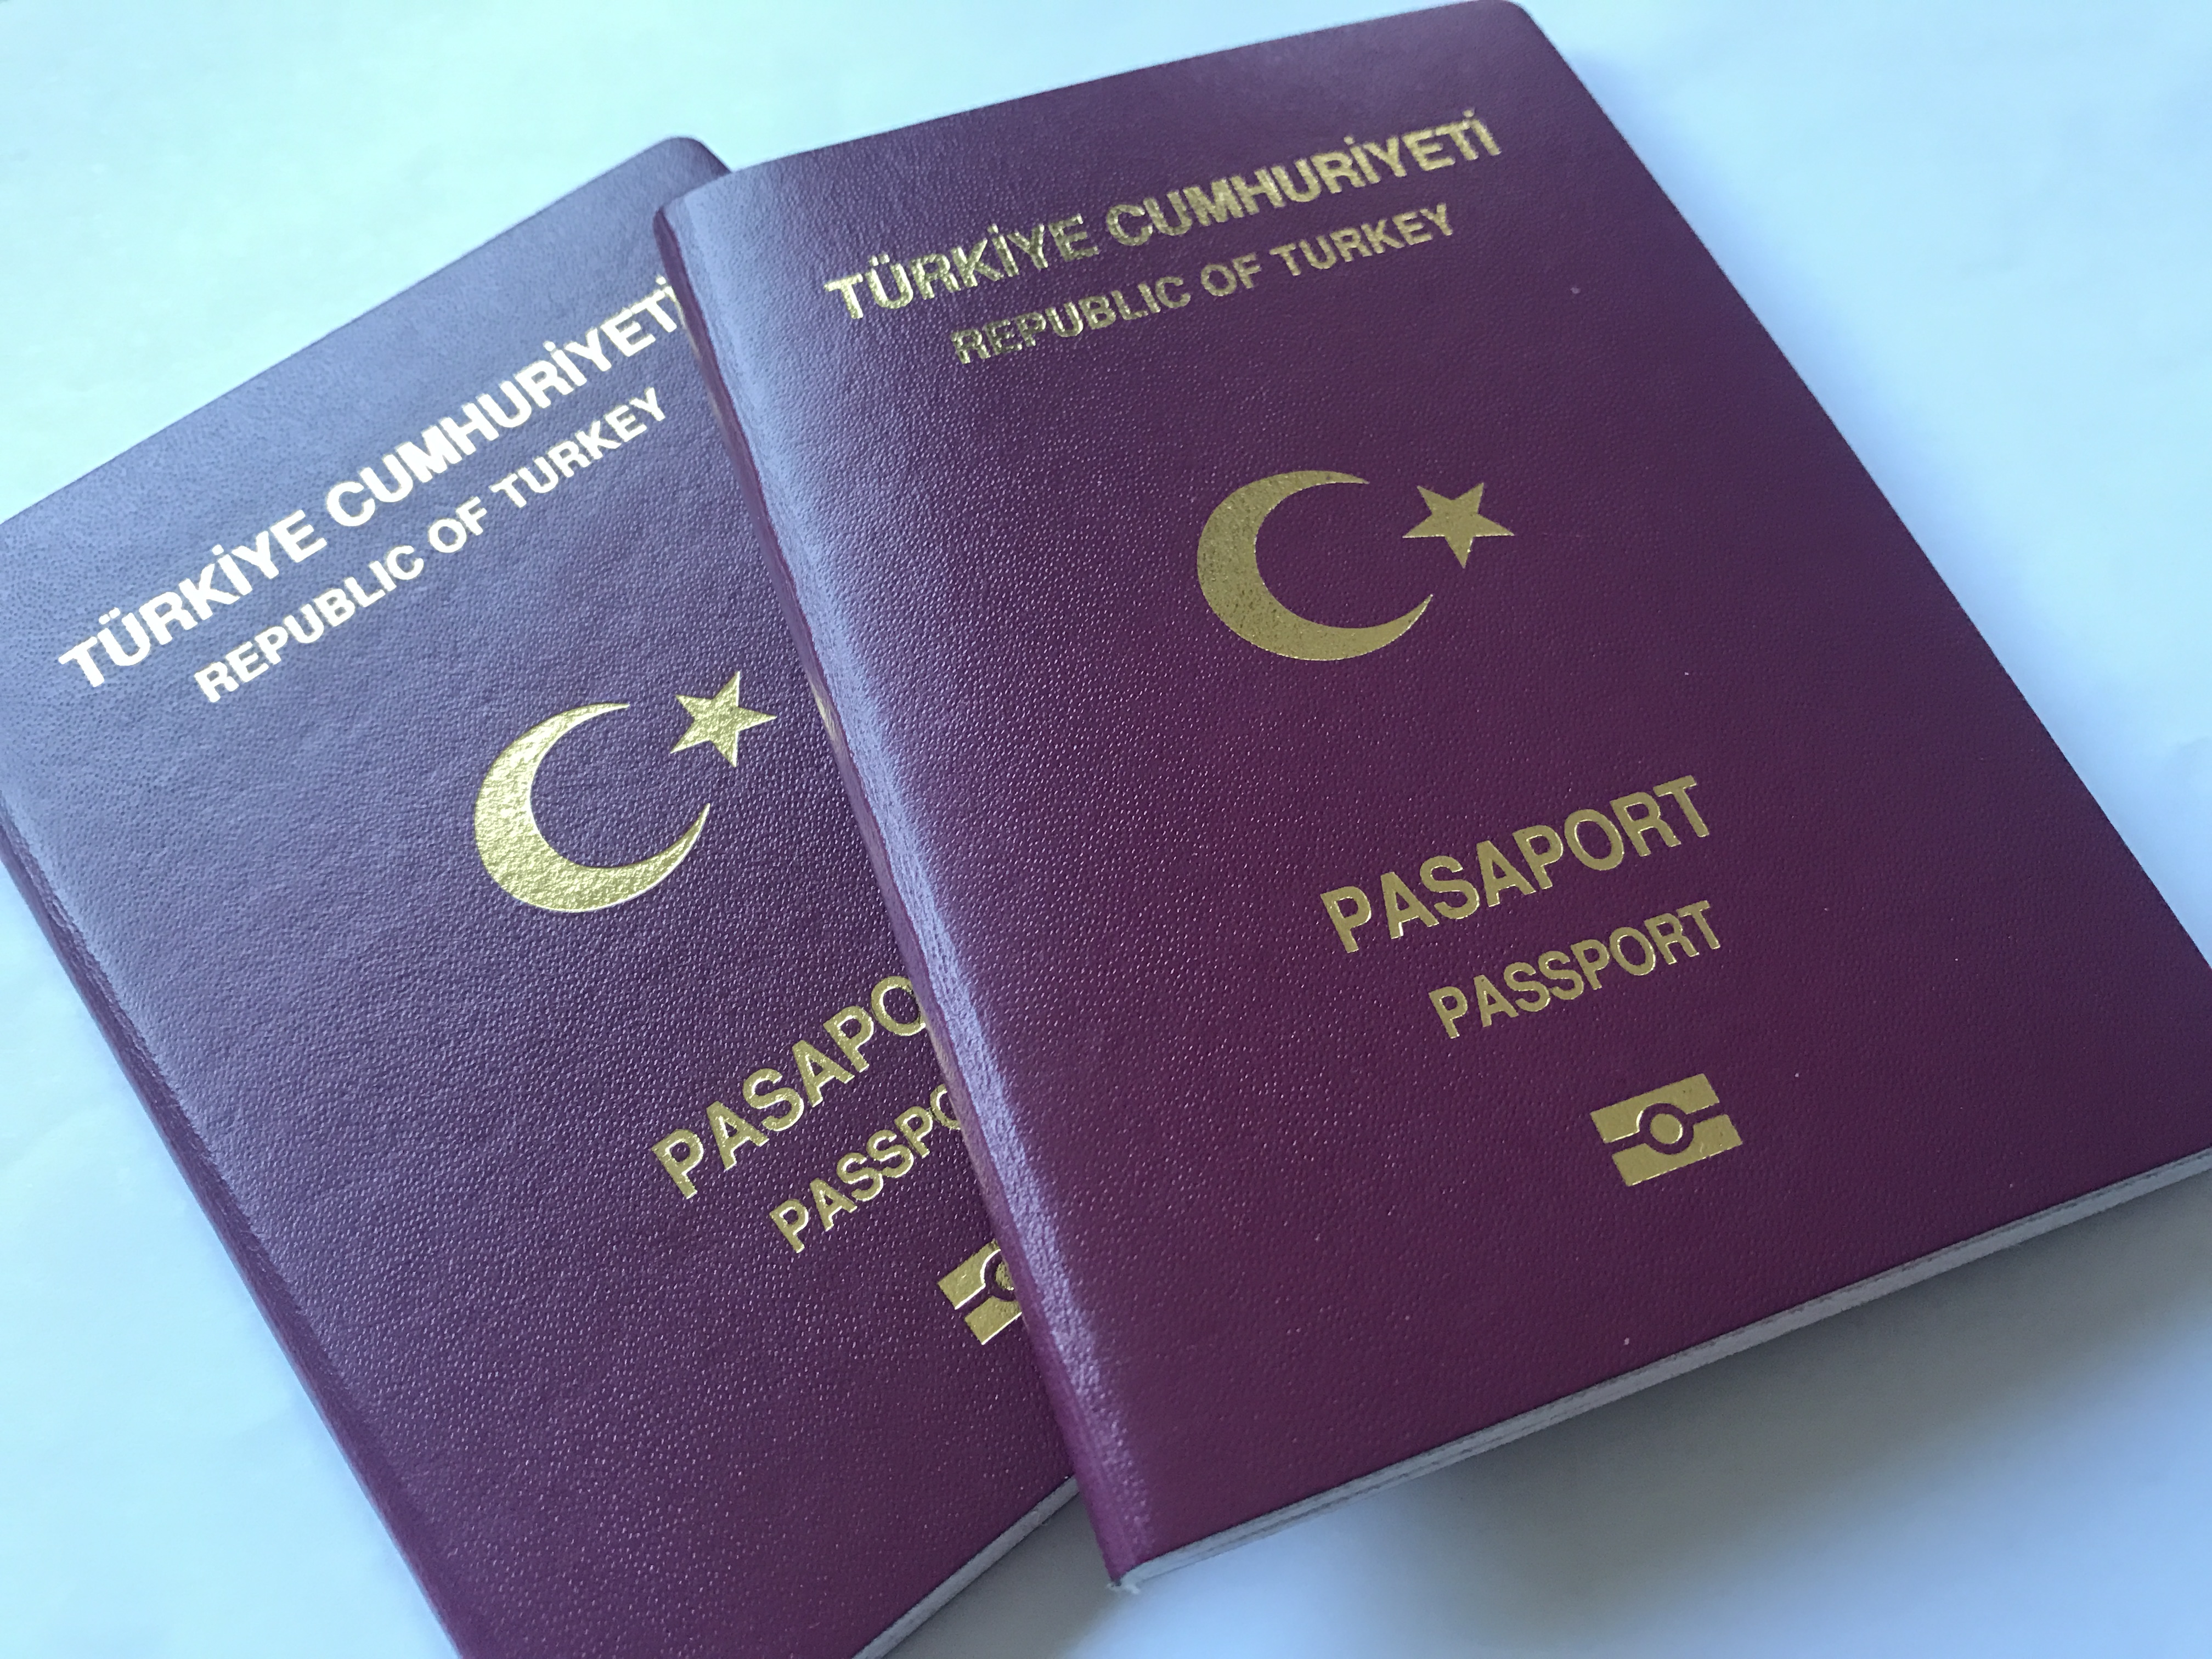    Может ли гражданка РФ въехать в Россию по турецкому паспорту, как гражданка Турции?